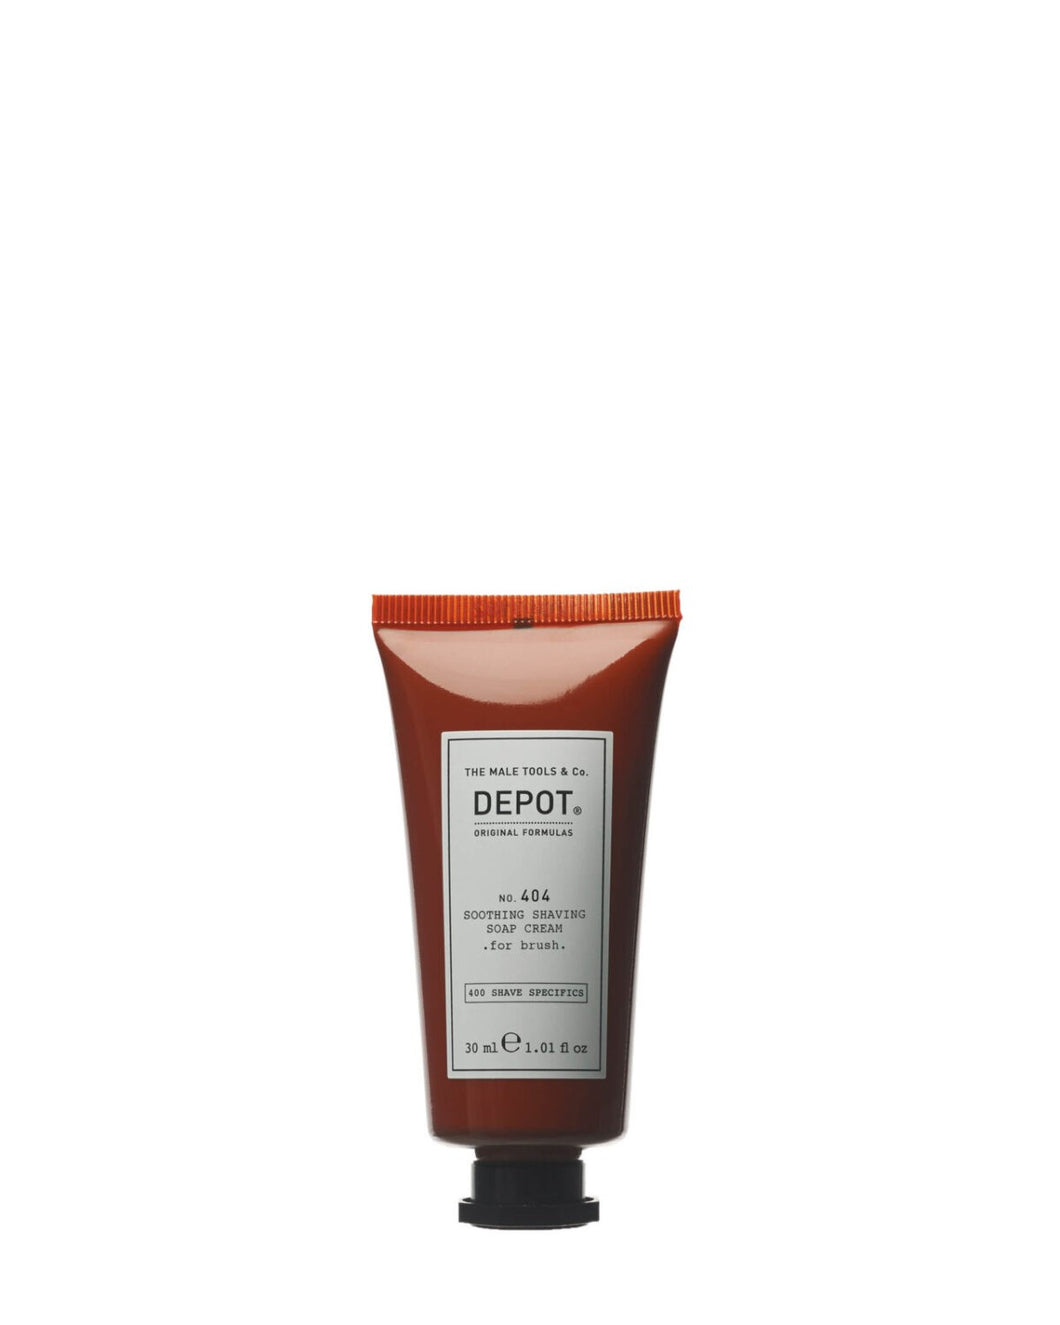 Depot- Soothing Shaving Soap Cream for brush 404